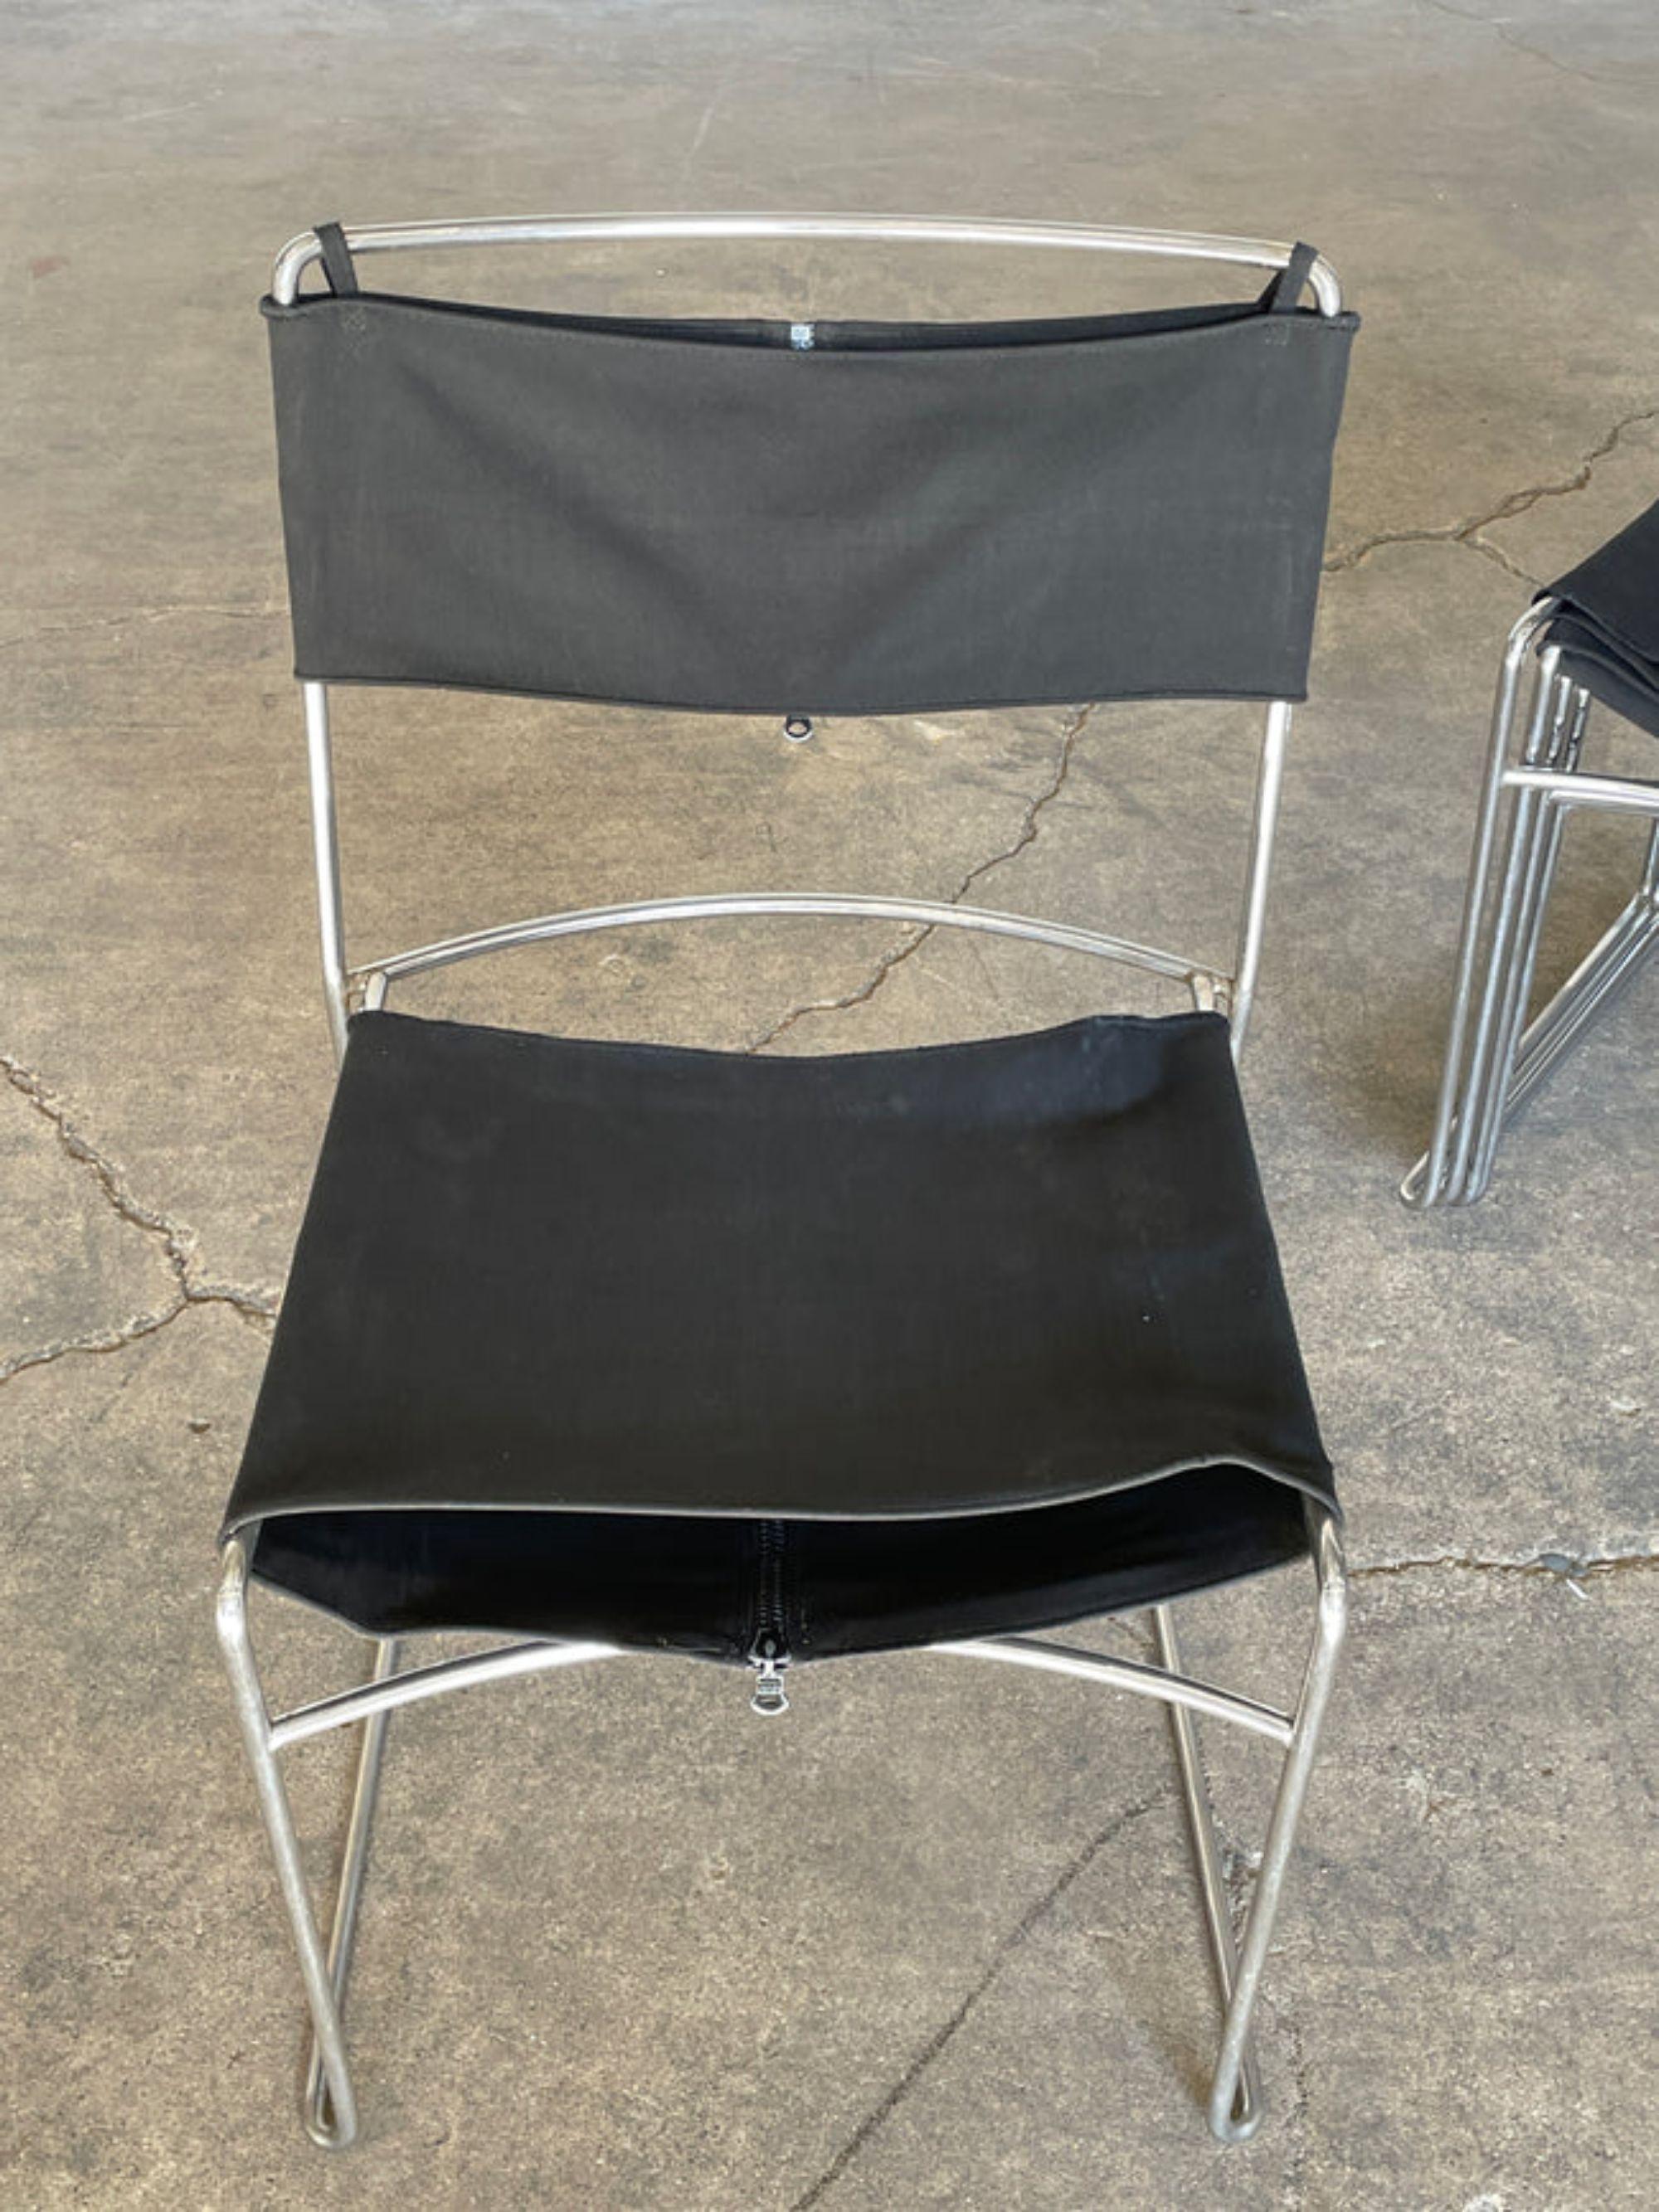 Enzo Mari 'Delfina' ensemble de six chaises de salle à manger empilables pour Driade, Italie, 1974. 

Ce projet a remporté le Compasso d'Oro.

Informations supplémentaires :
MATERIAL : Métal tubulaire chromé, tapisserie d'origine
Dimensions :